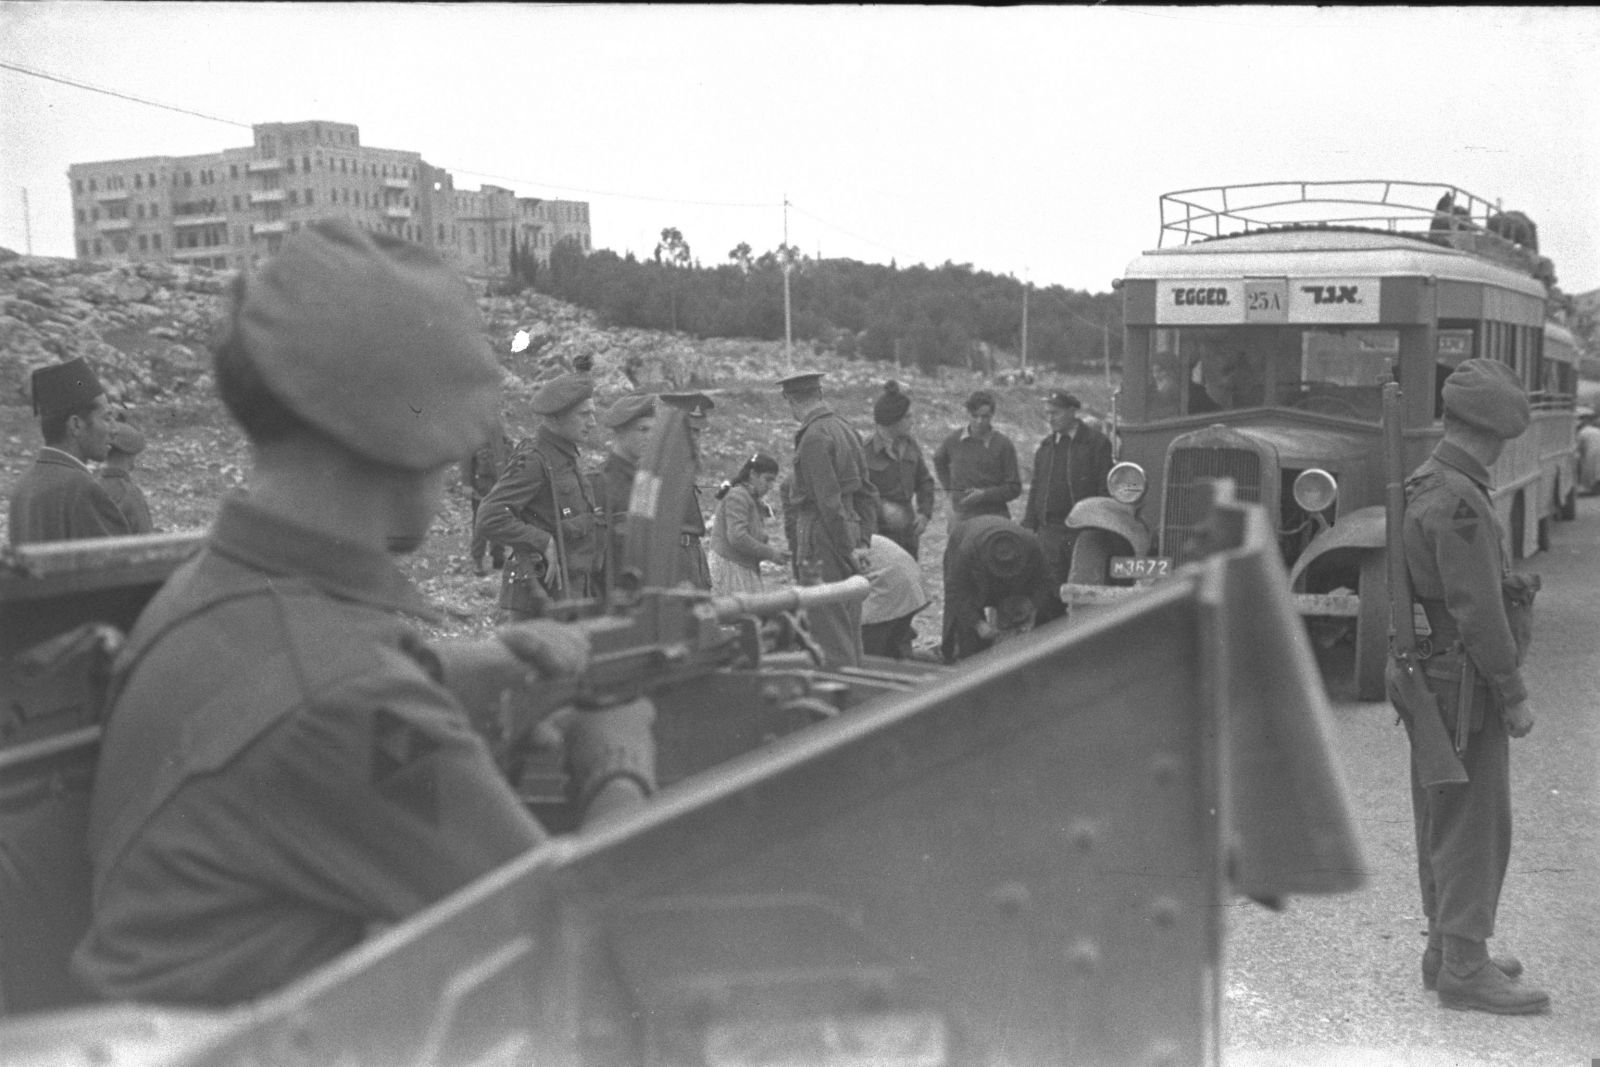 חיילים בריטים עורכים חיפוש על נוסעי אוטובוס אגד לירושלים, 1.1.1947 (צילום: הנס פין, לע"מ)